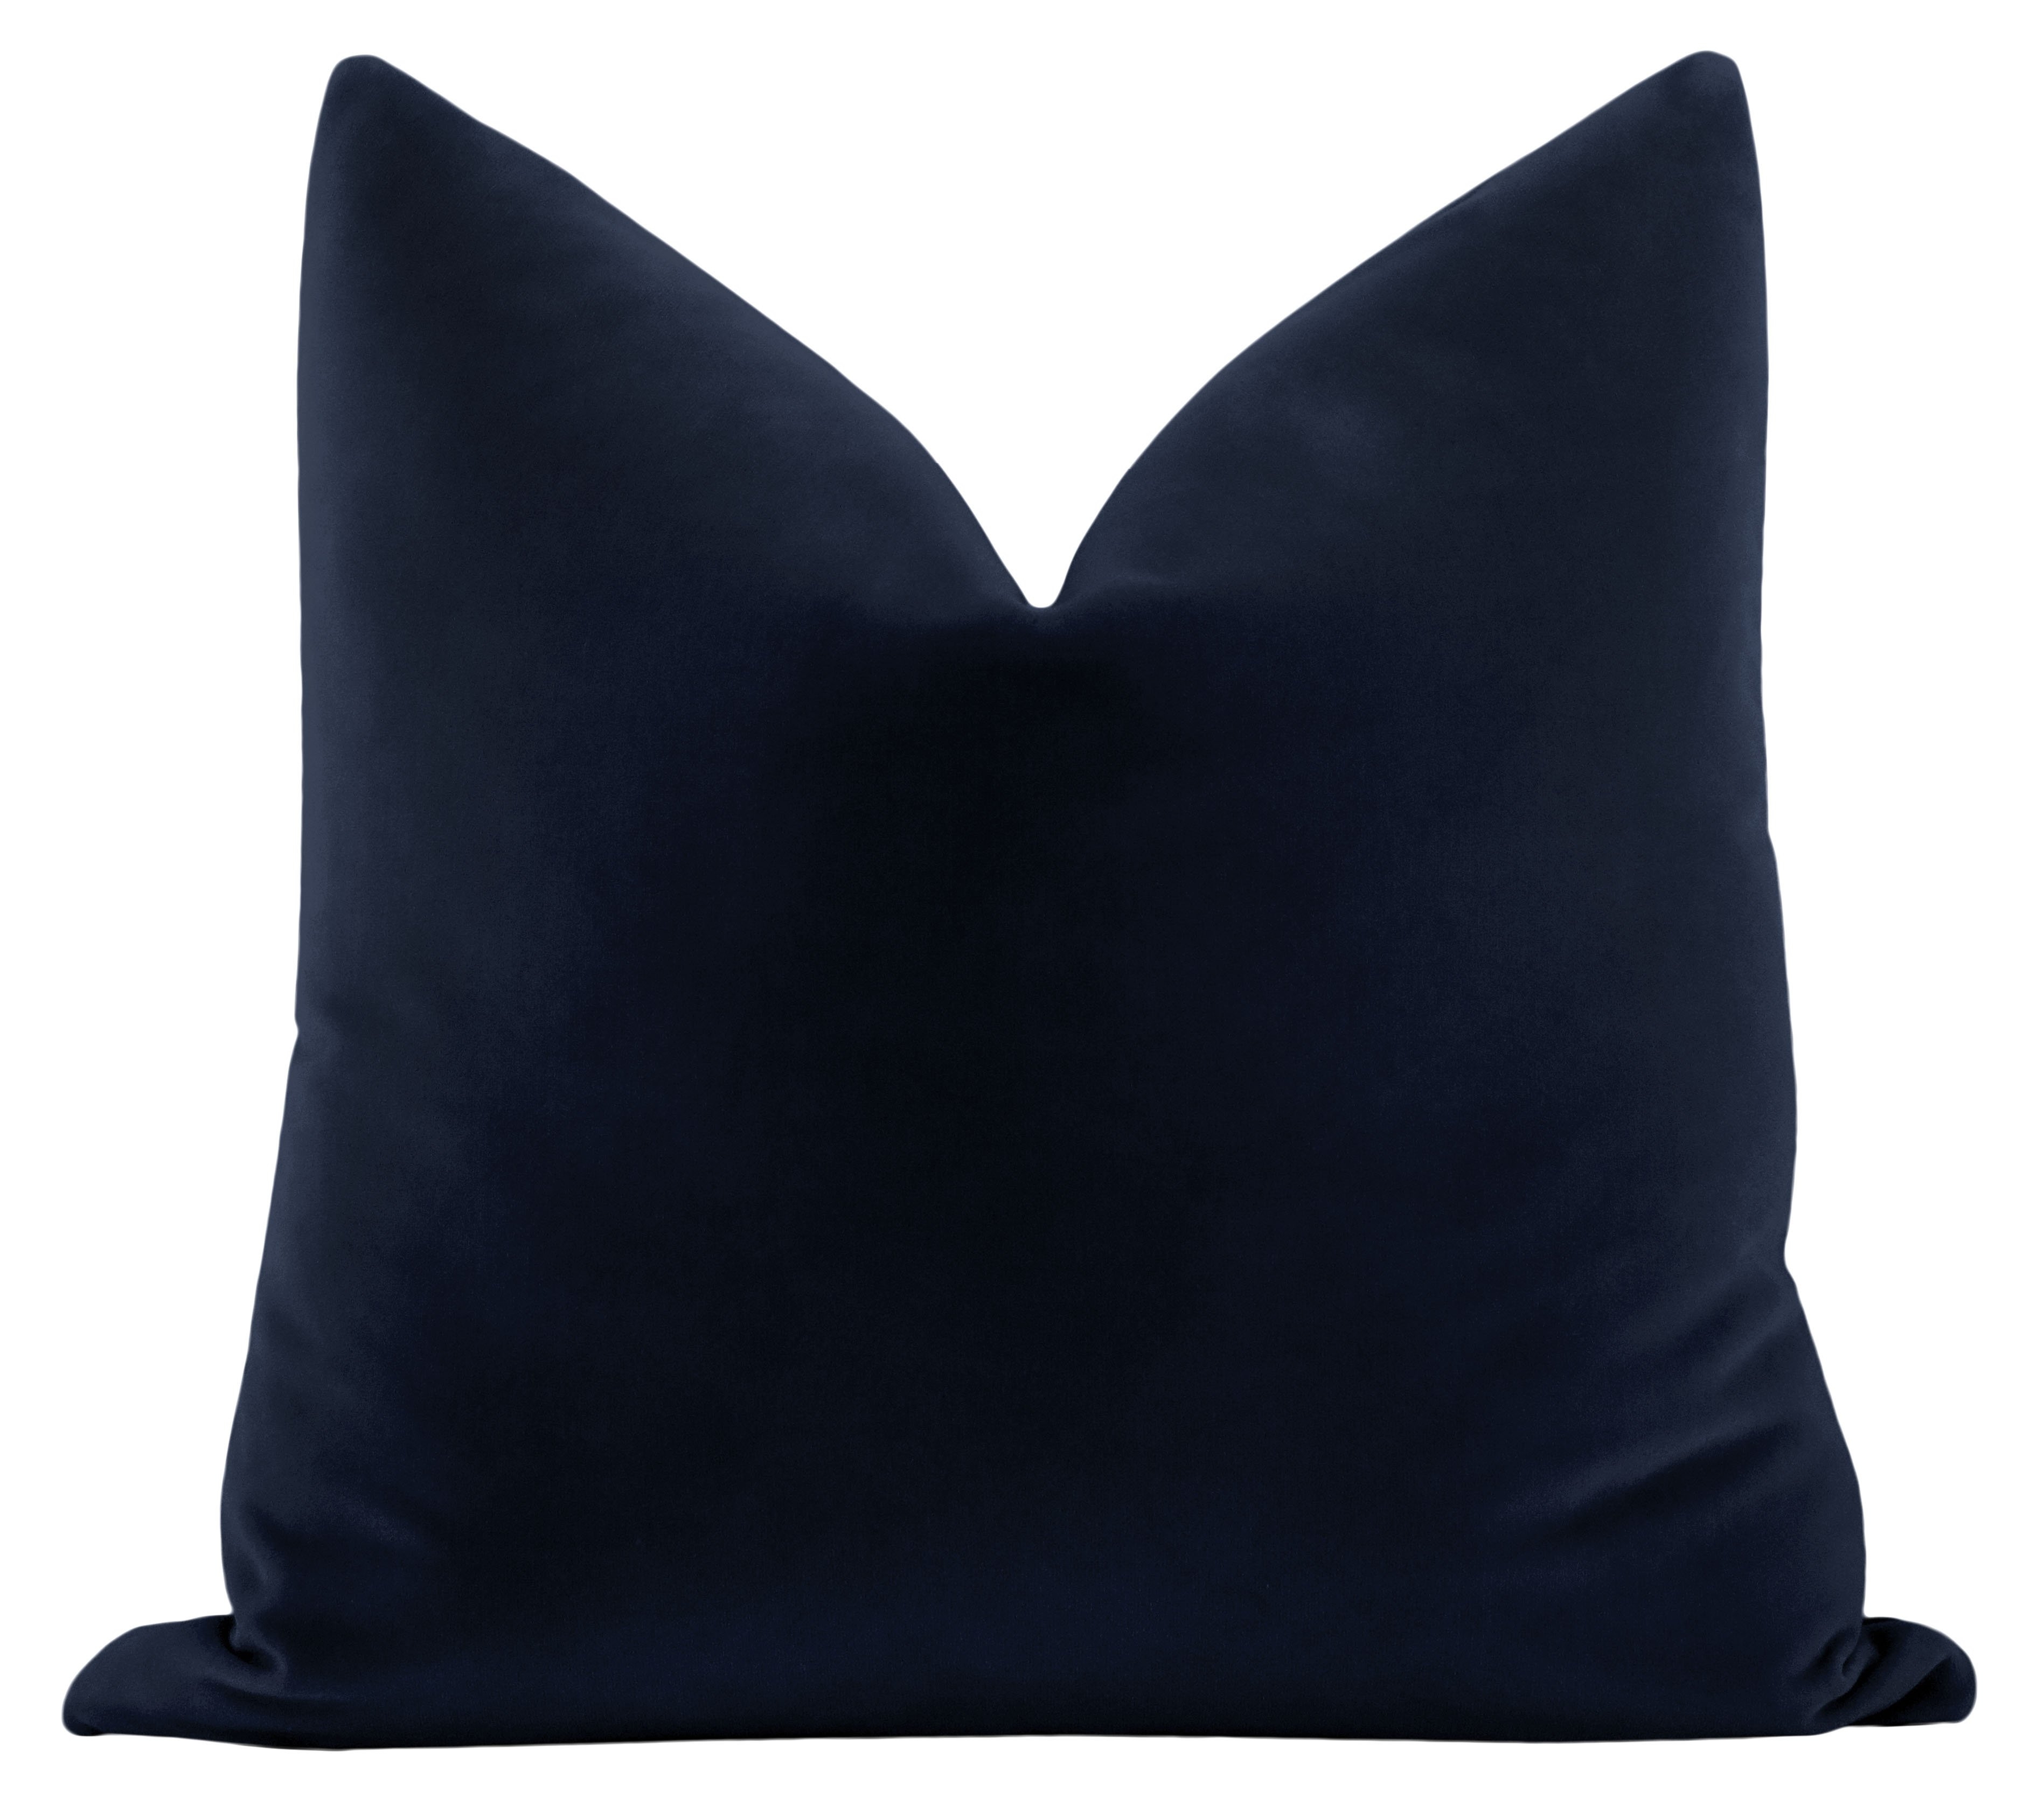 Studio Velvet Throw Pillow Cover, Navy Blue, 20" x 20" - Image 0